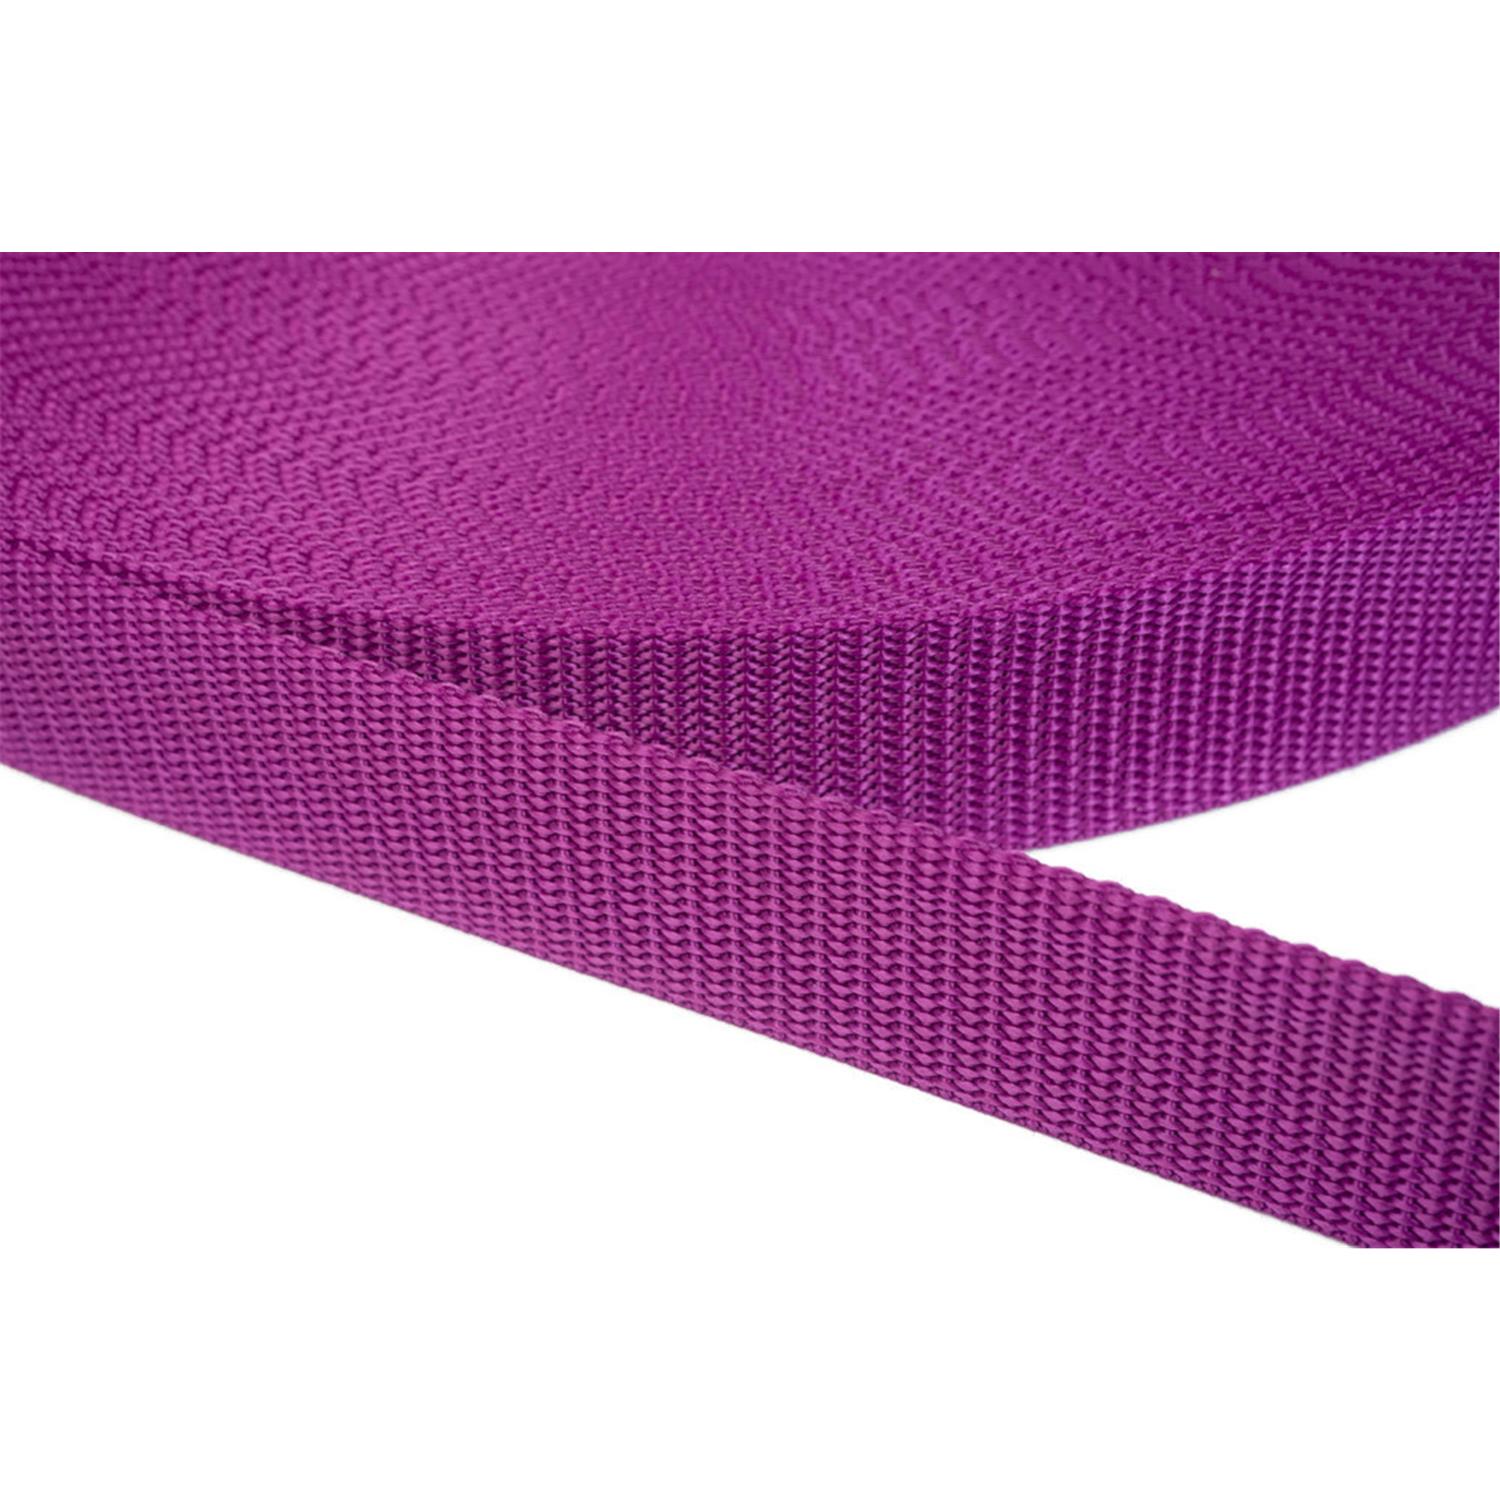 Gurtband 20mm breit aus Polypropylen in 41 Farben 22 - violettrot 06 Meter